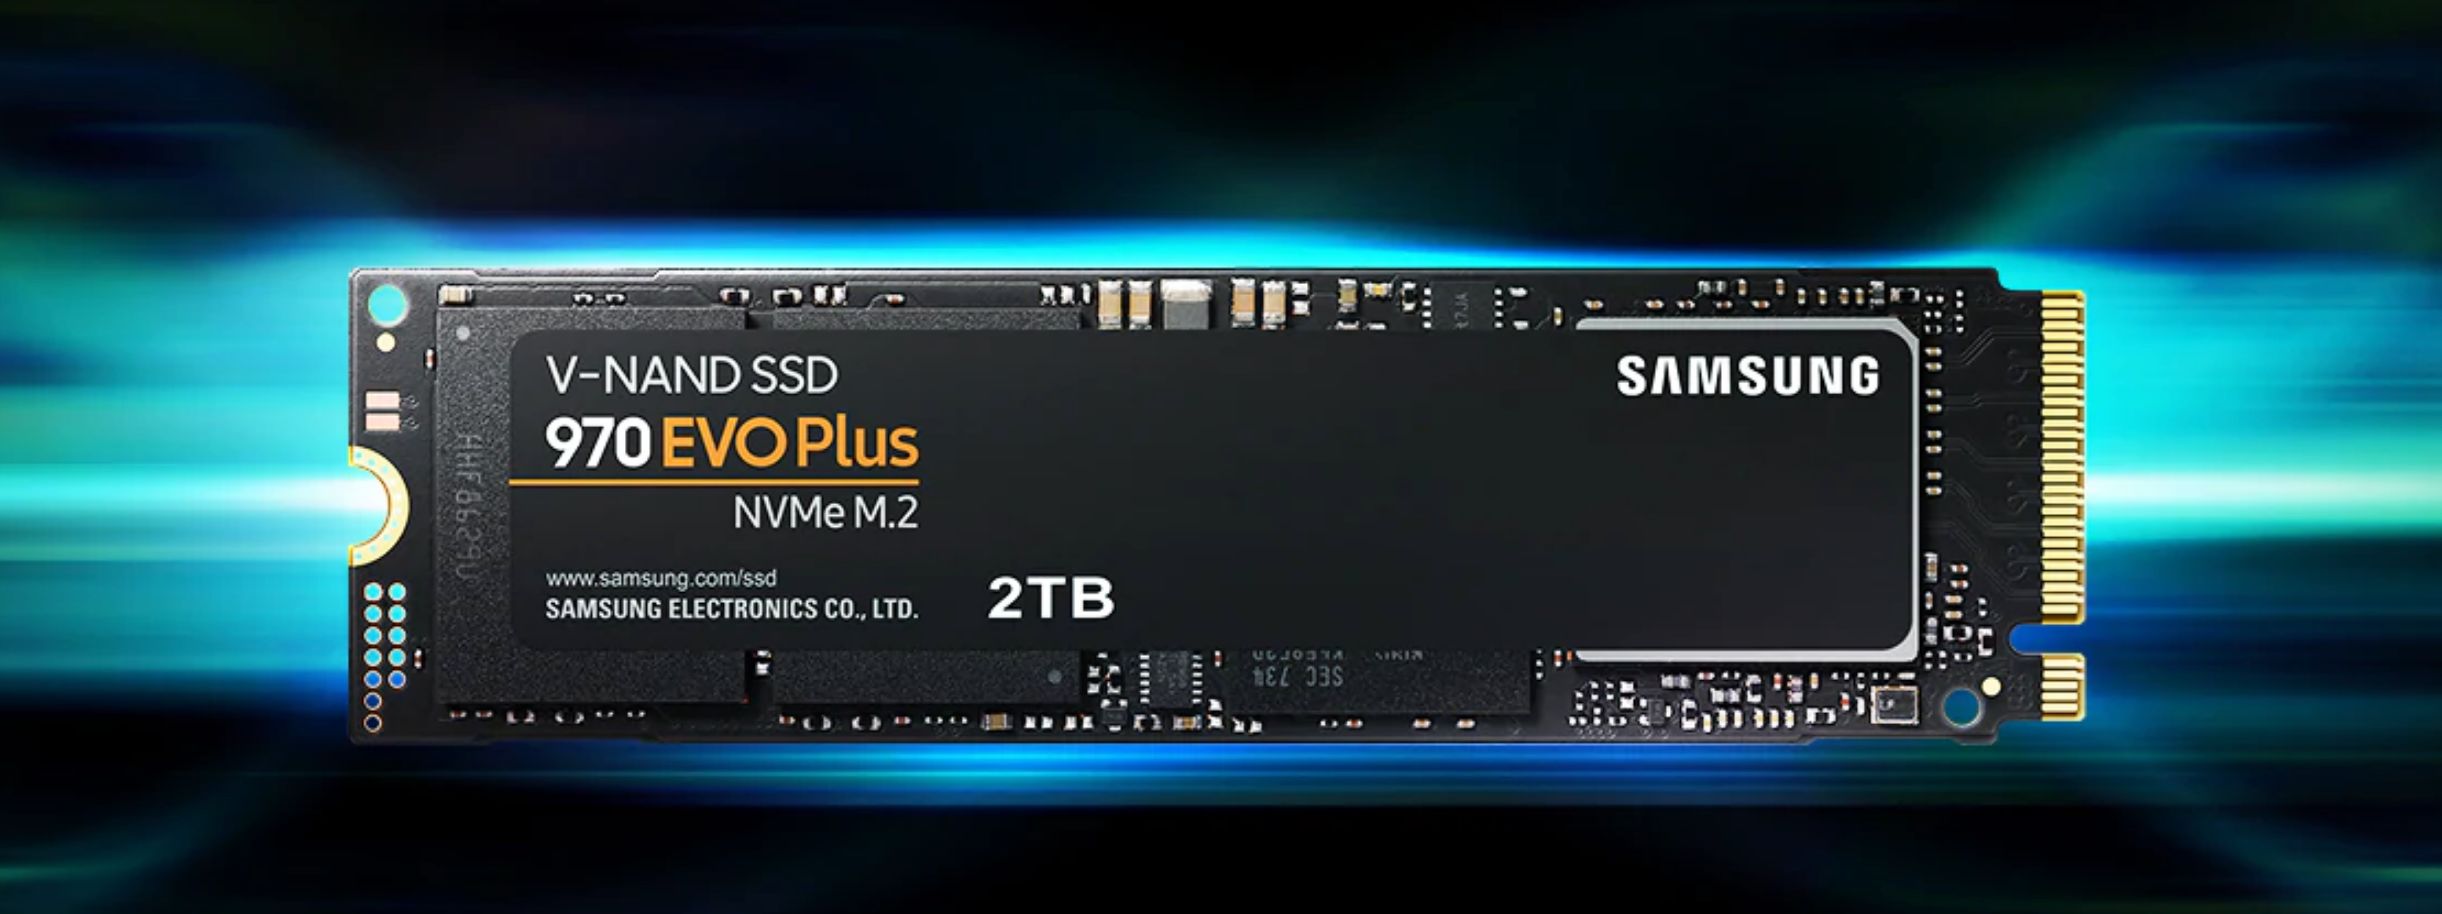 SSD Samsung 970 Evo Plus M2 PCIe 2280 - 1TB